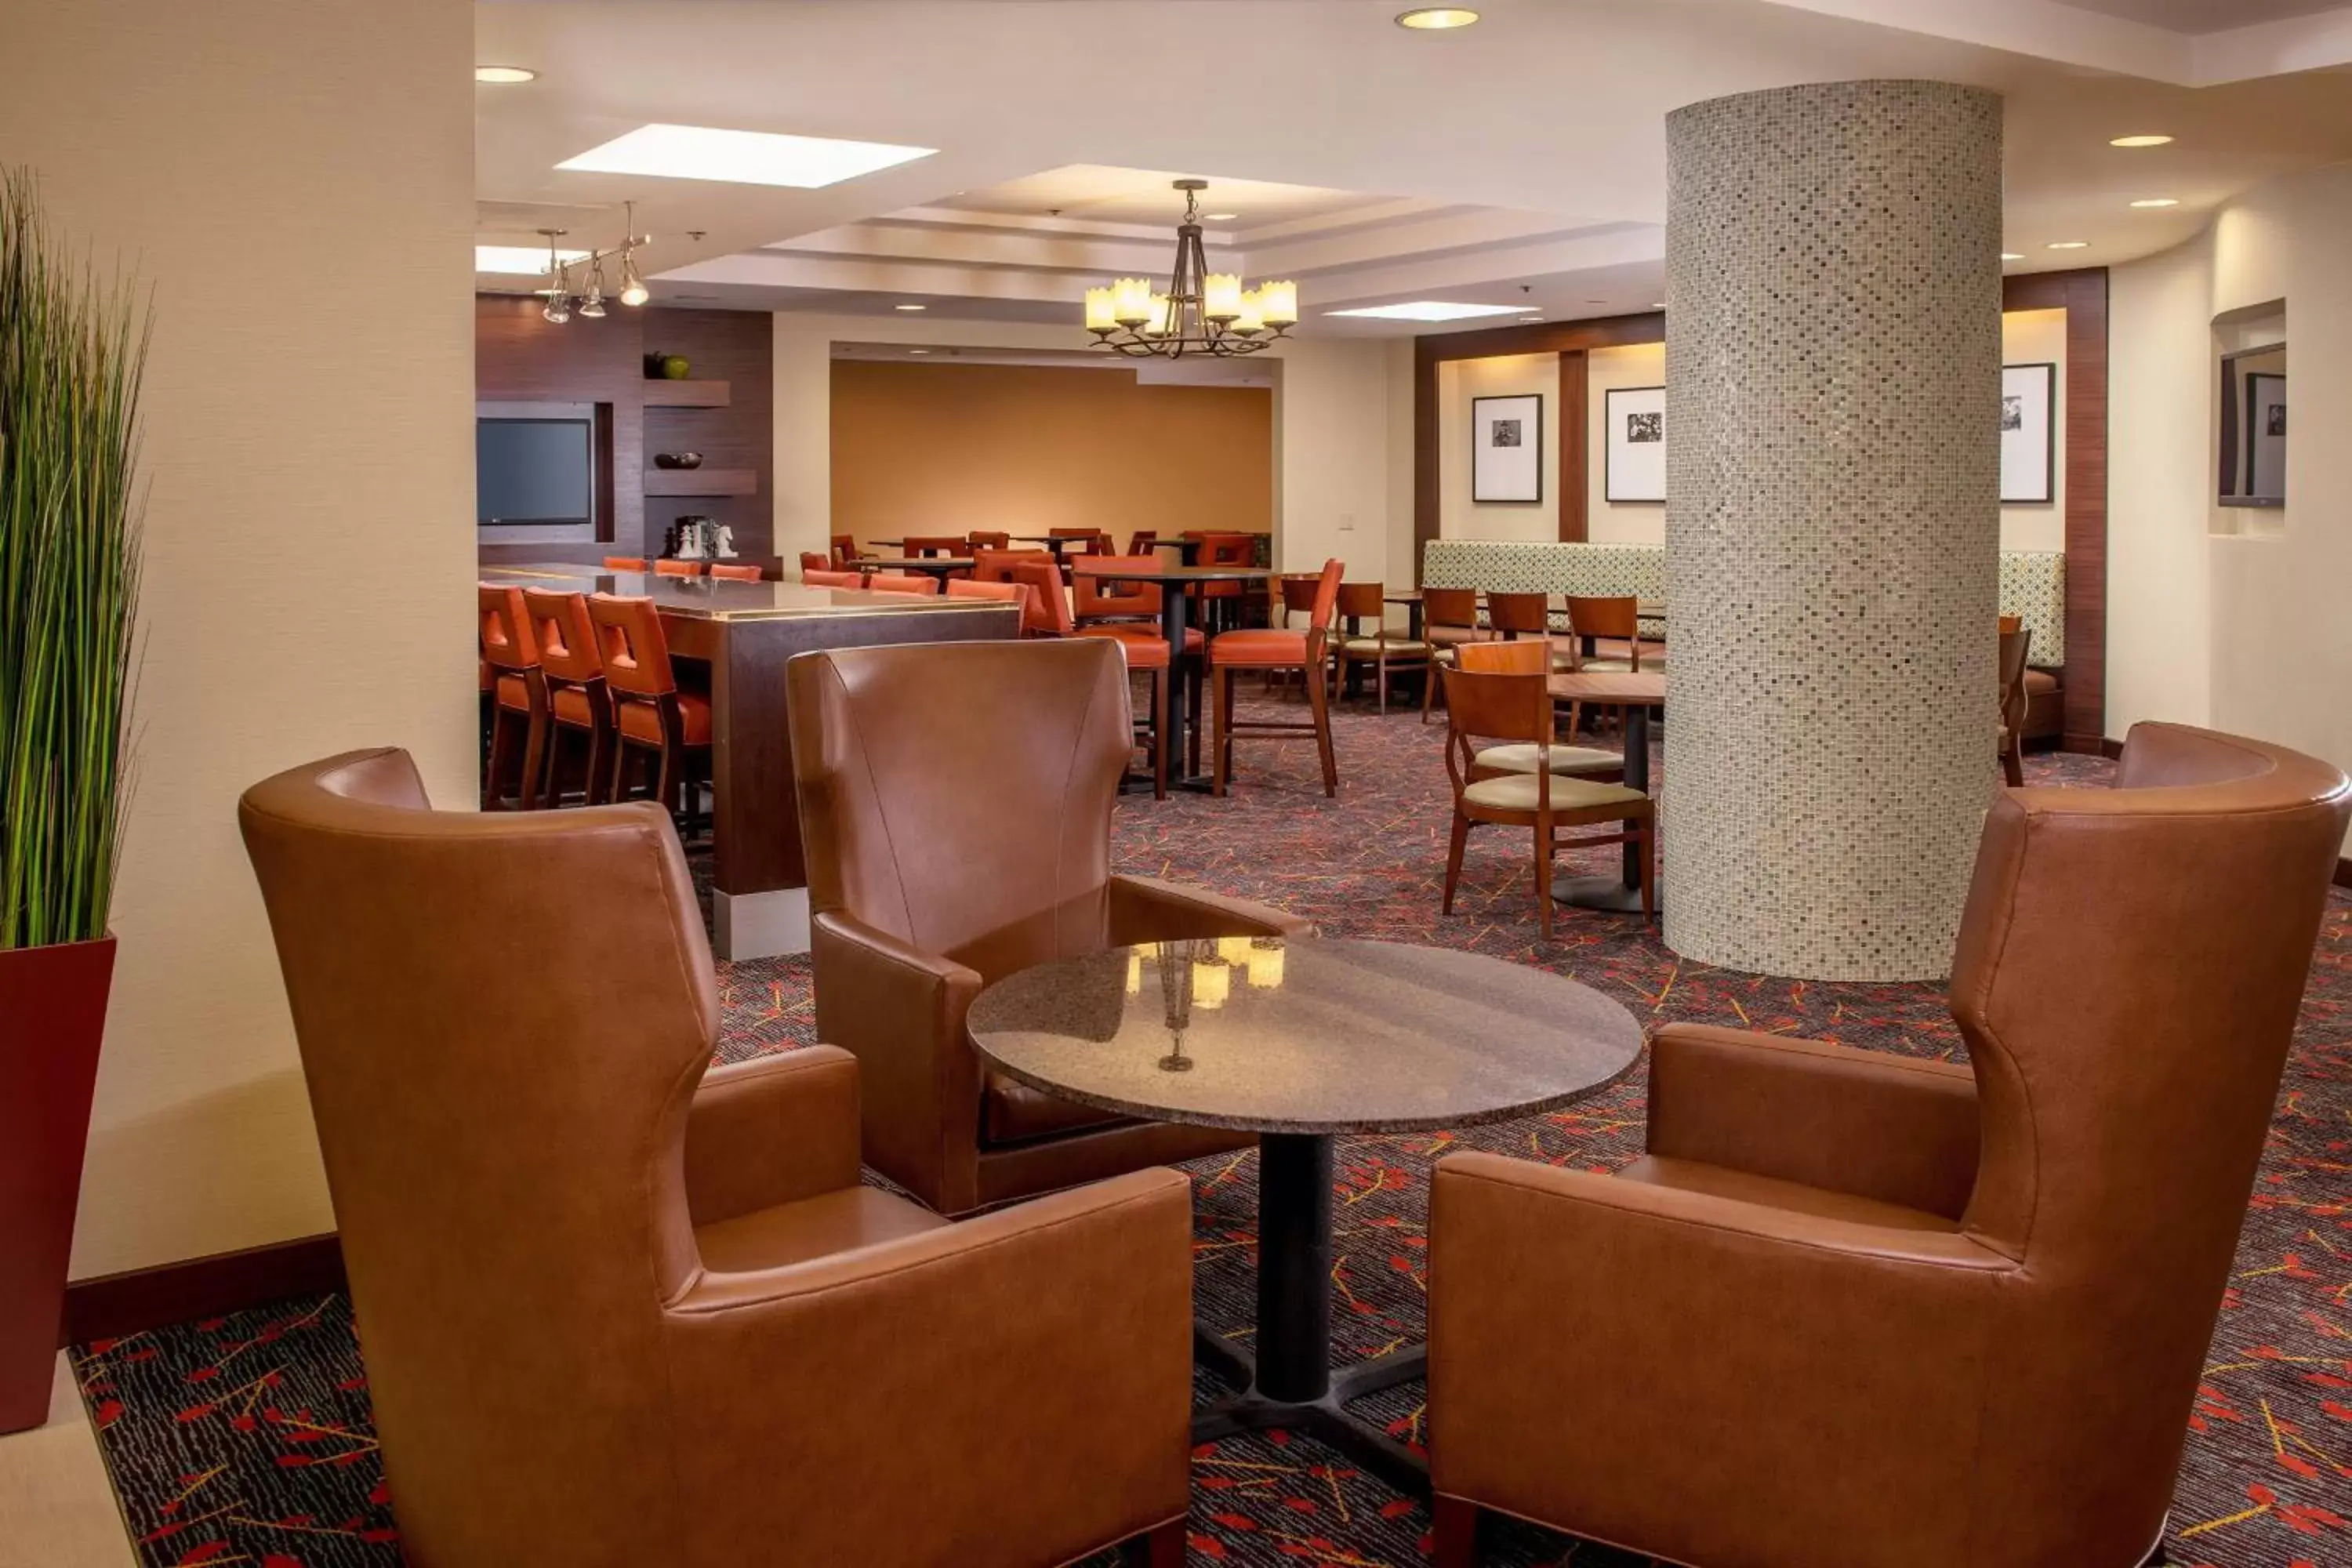 Restaurant/places to eat, Lounge/Bar in Residence Inn Washington, DC / Dupont Circle